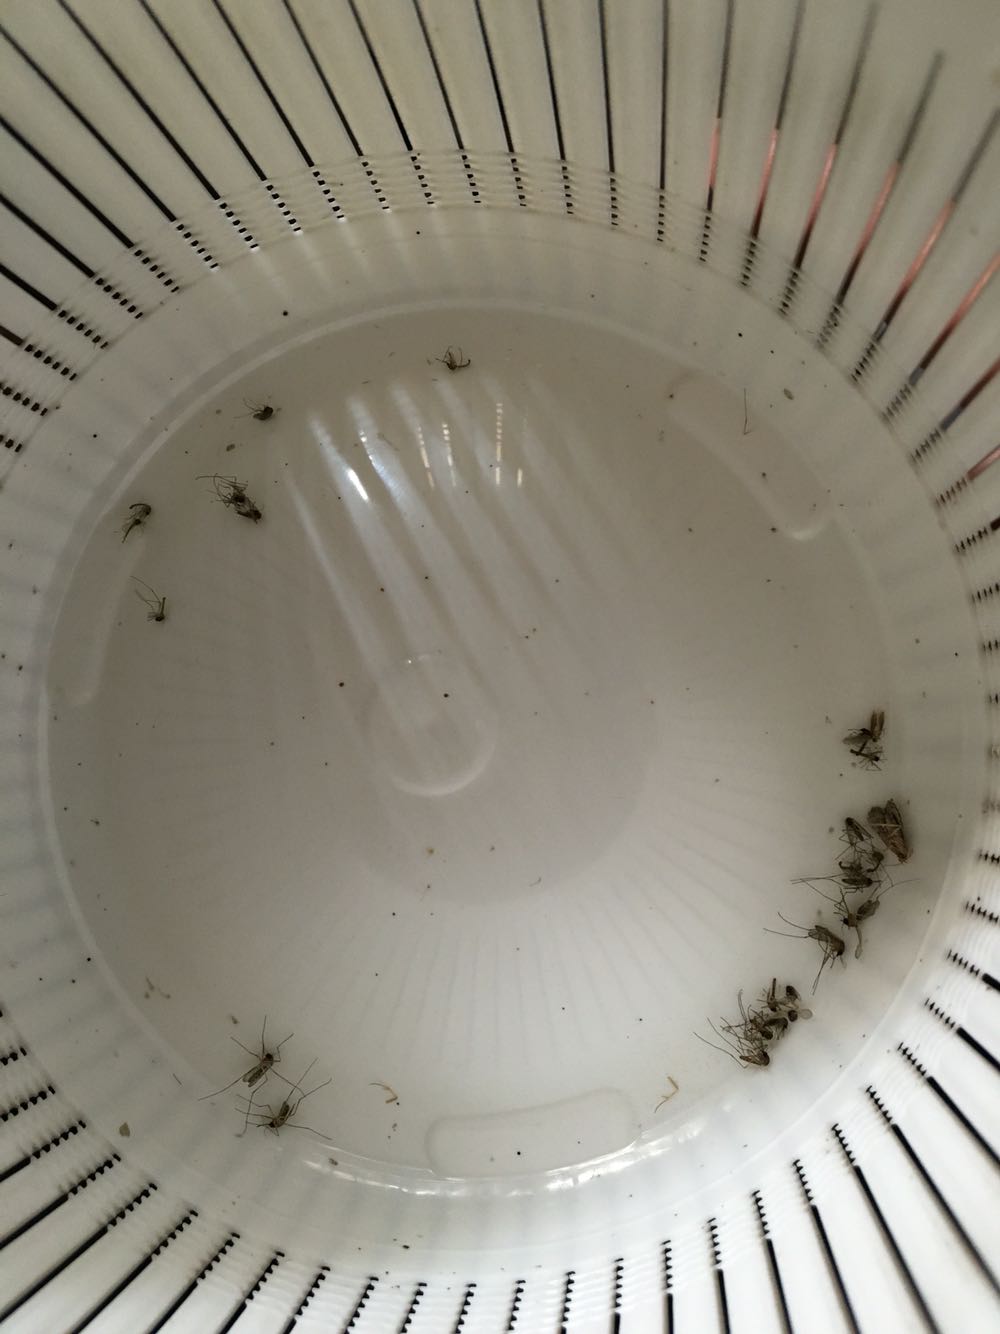 基本上每天都可以抓20只左右的蚊子，家里的蚊子实在太多，只